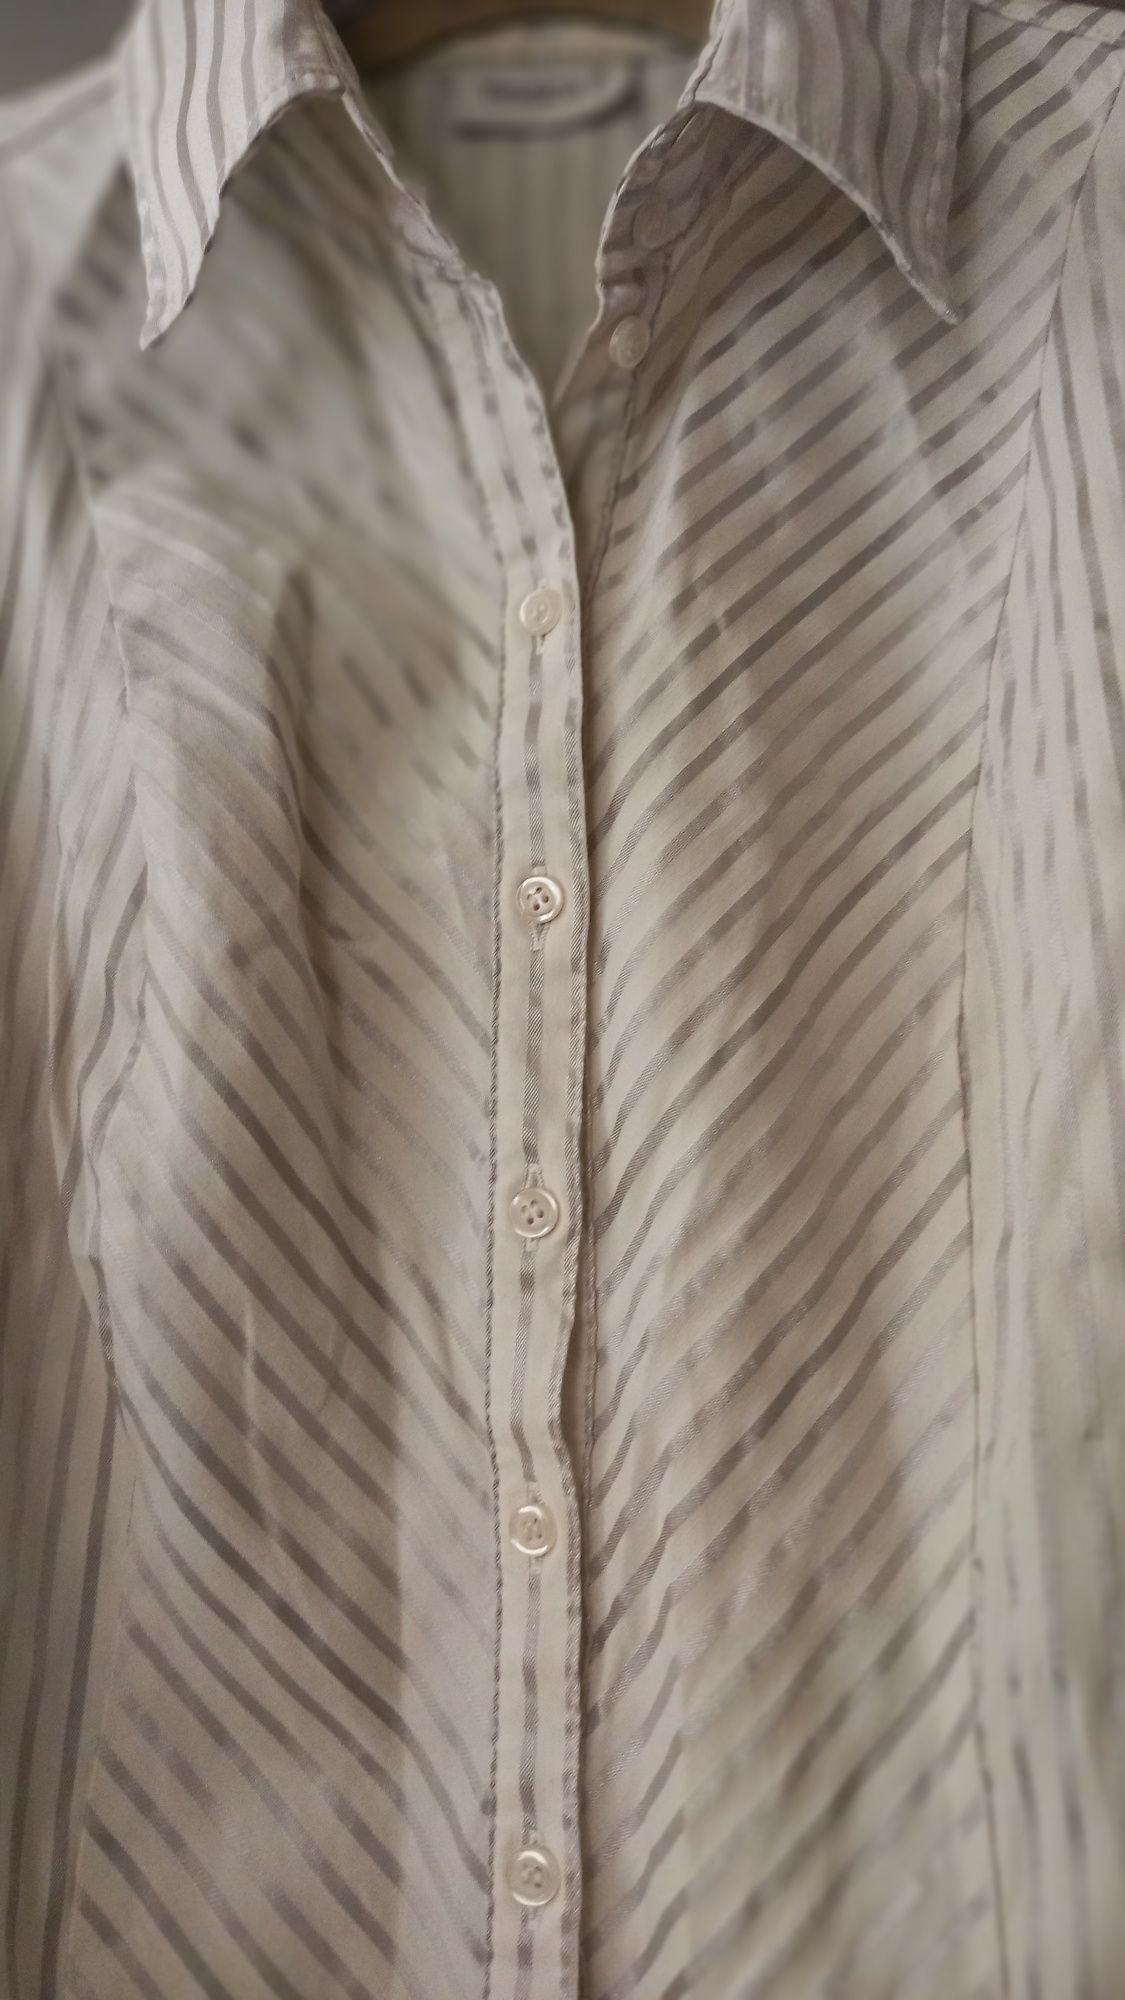 Koszula bluzka rozpinana biała srebrna taliowana 40-42 L-XL Jak Nowa